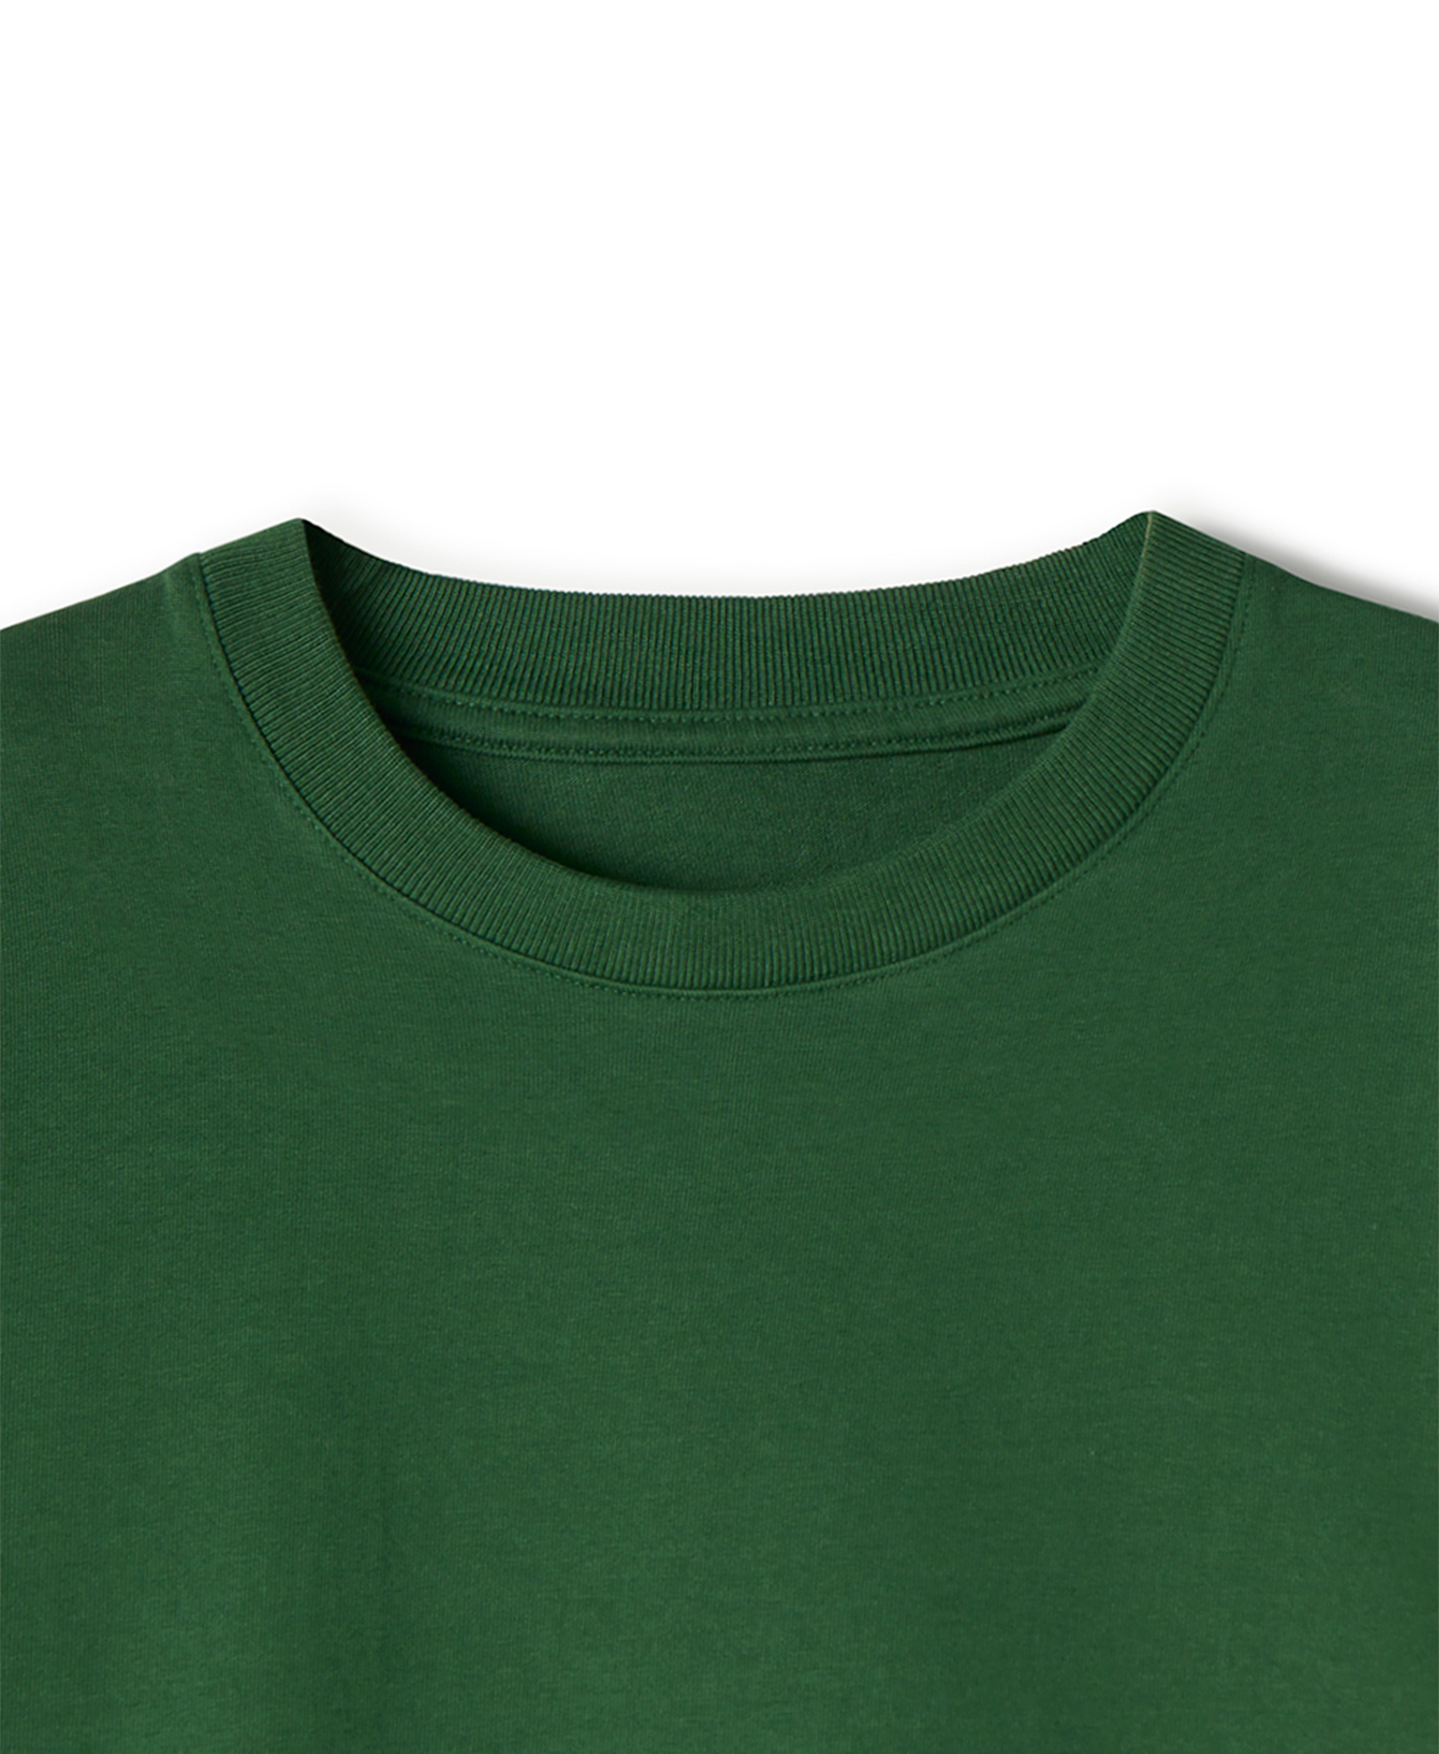 300 GSM 'Pine Green' T-Shirt